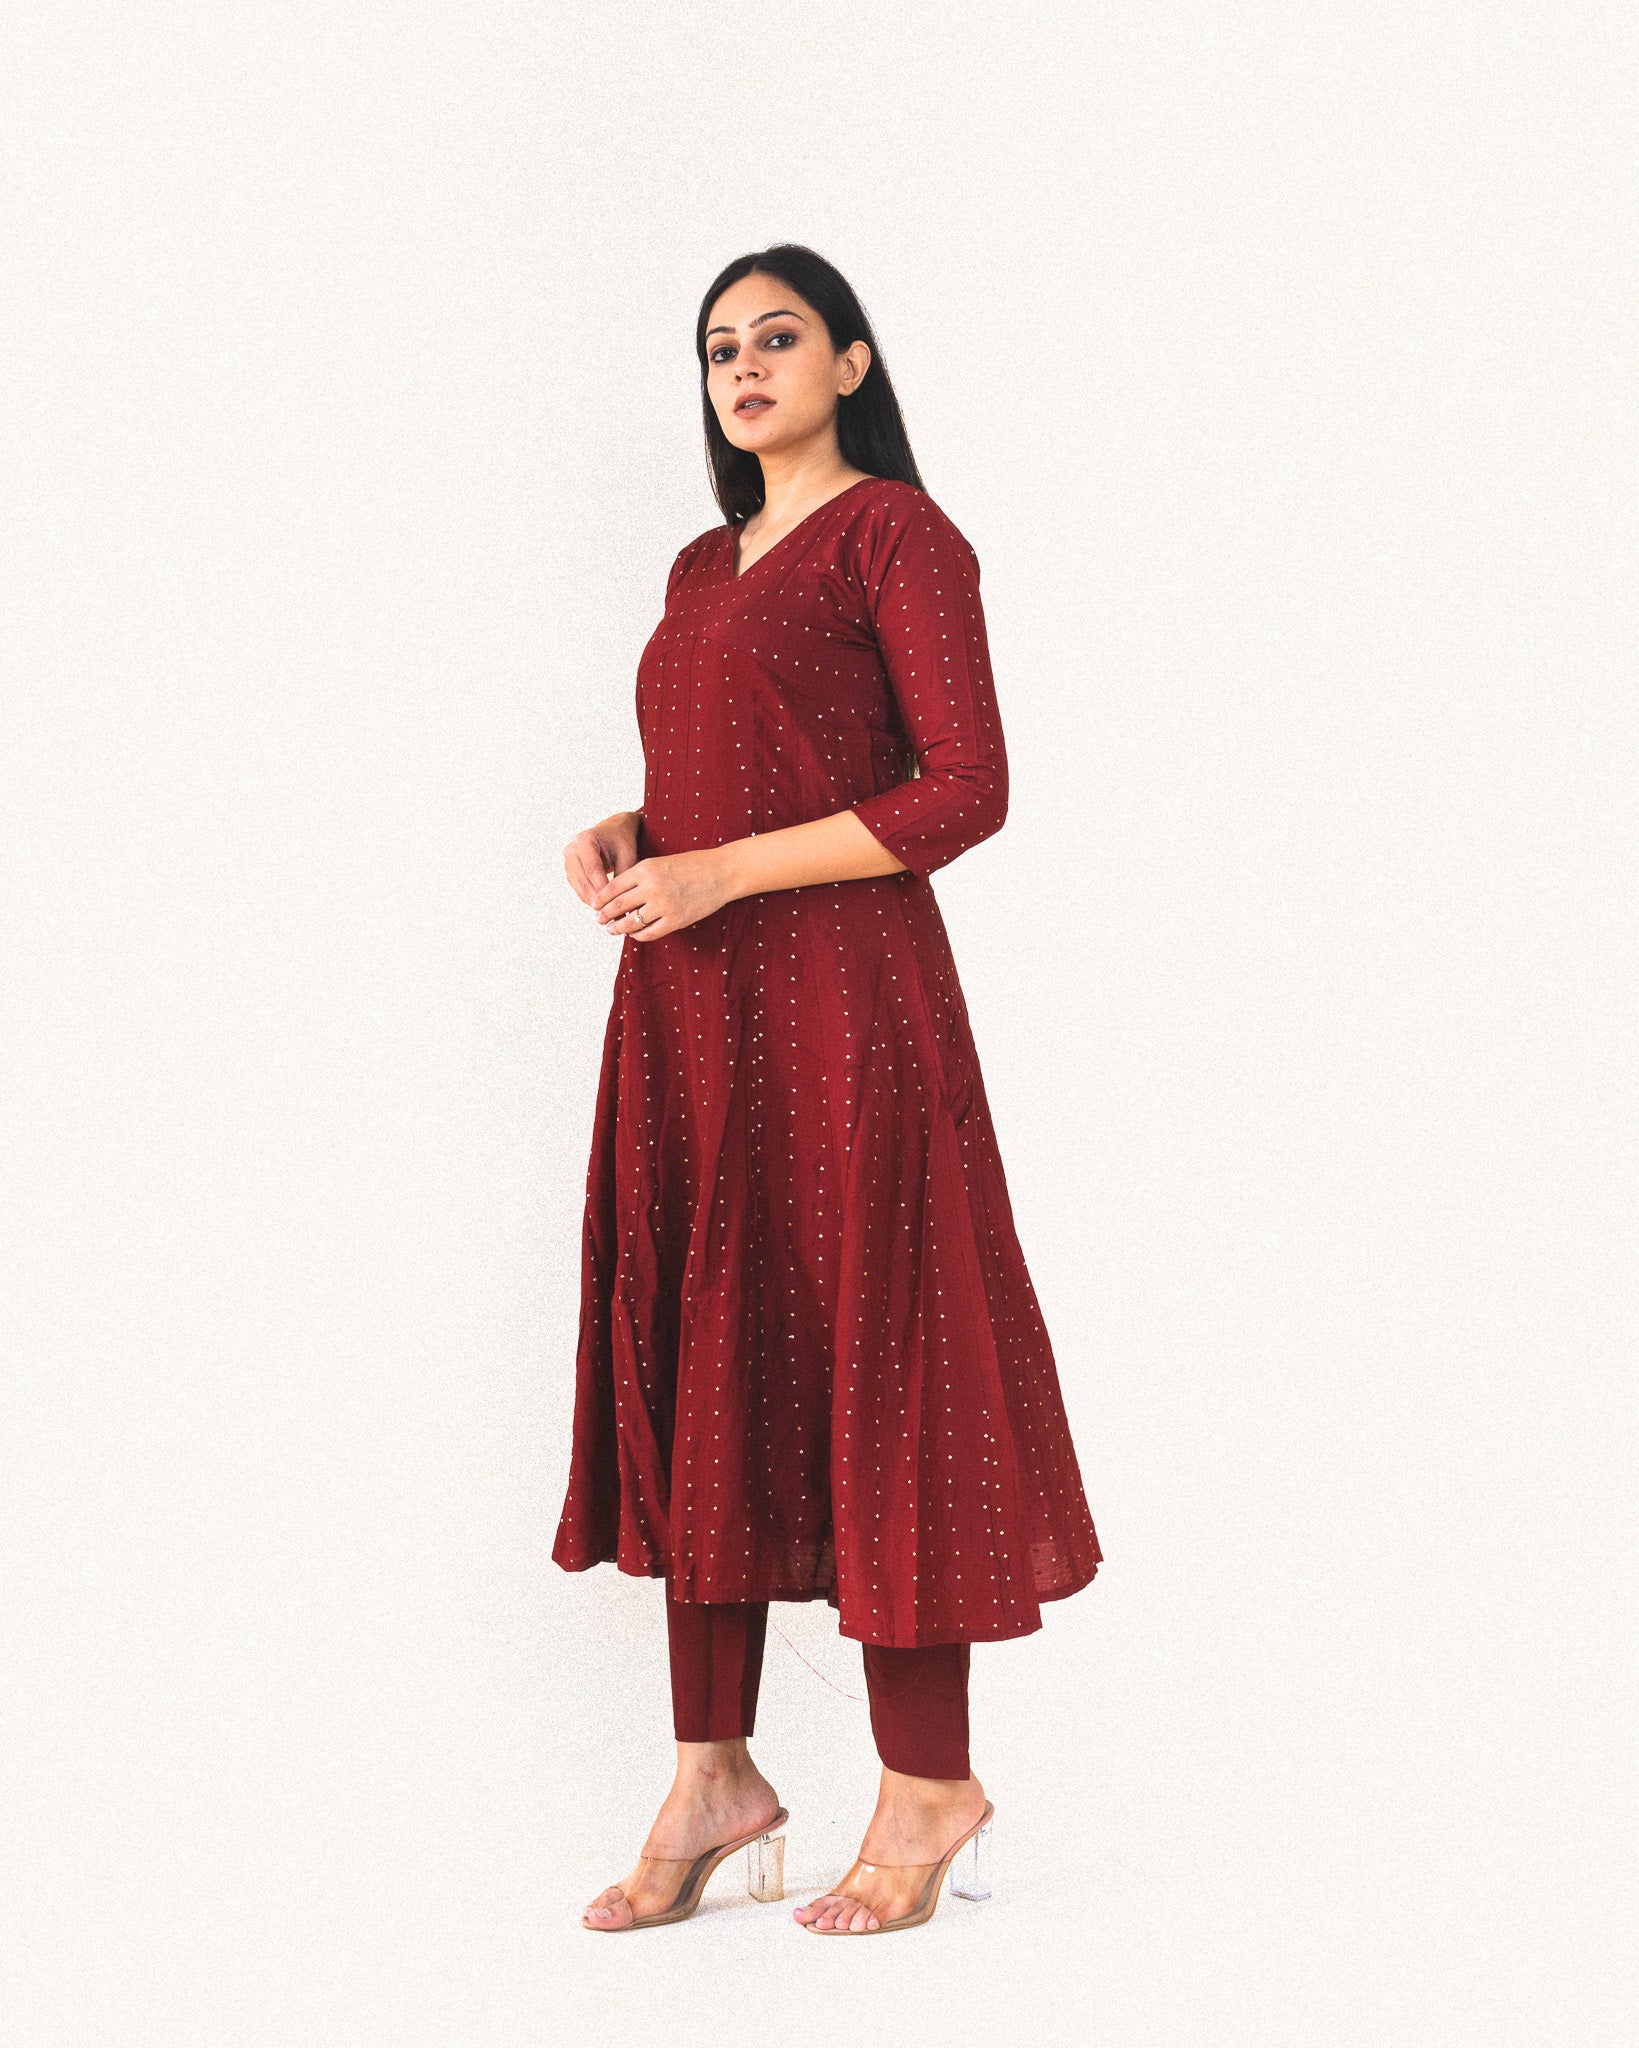 Printed Designer Cotton Kurti Pant Set With Dupatta, Handwash, Size: 38-46  at Rs 725/set in Jaipur